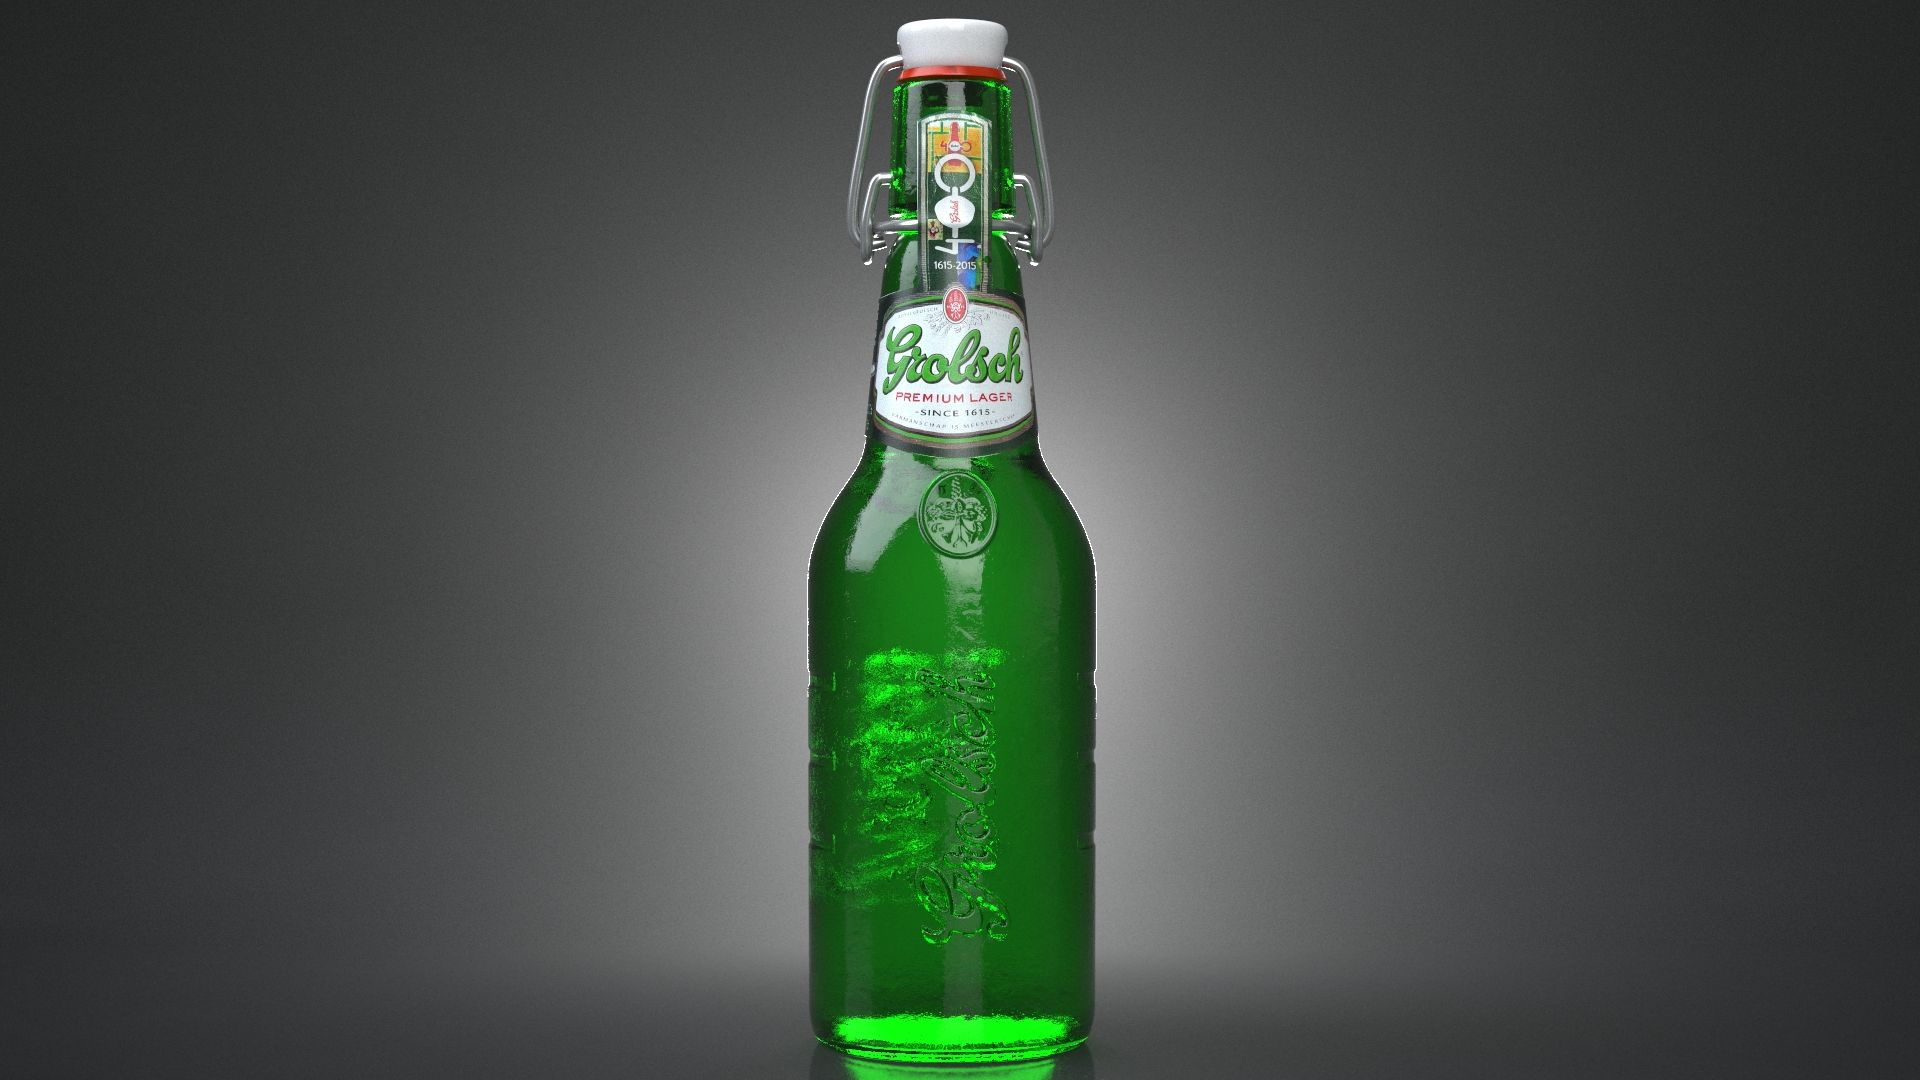 Heineken Bottle  Brewski's To Go